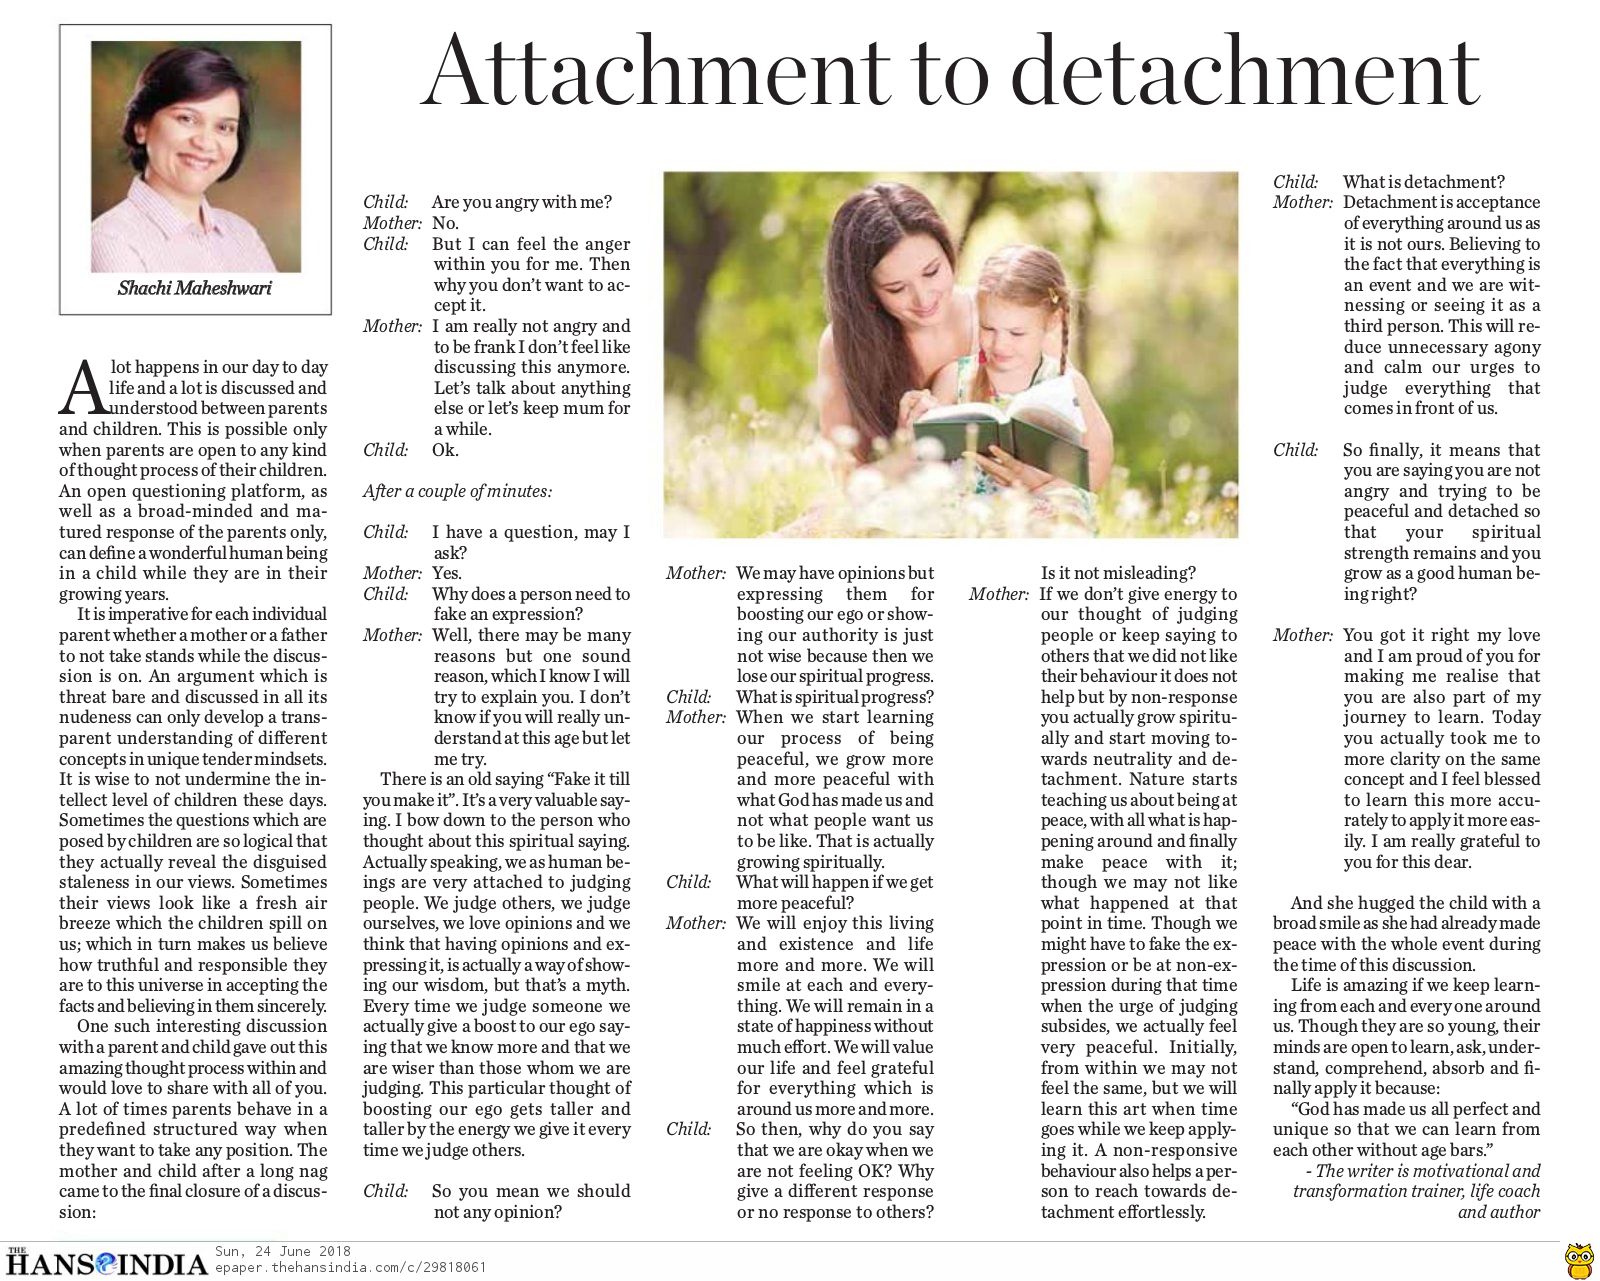 Attachment to Detachment